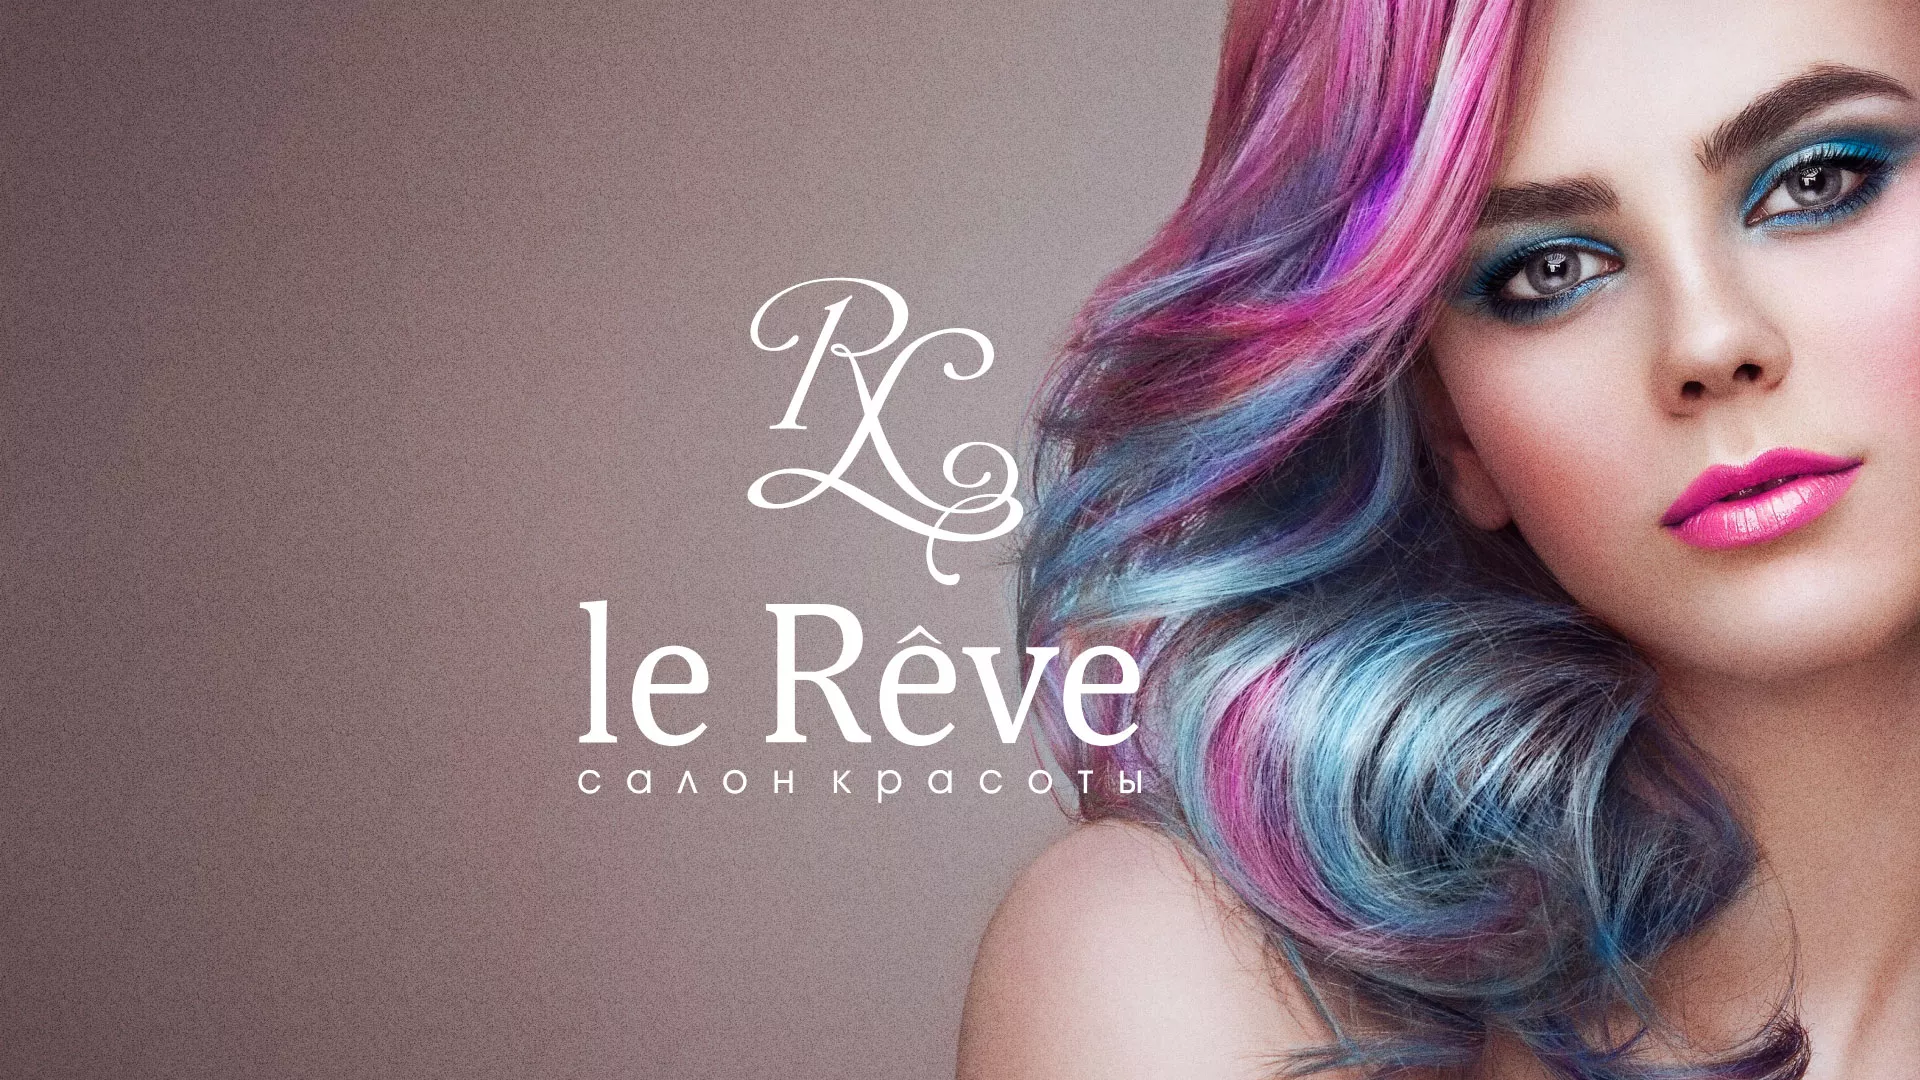 Создание сайта для салона красоты «Le Reve» в Ялте